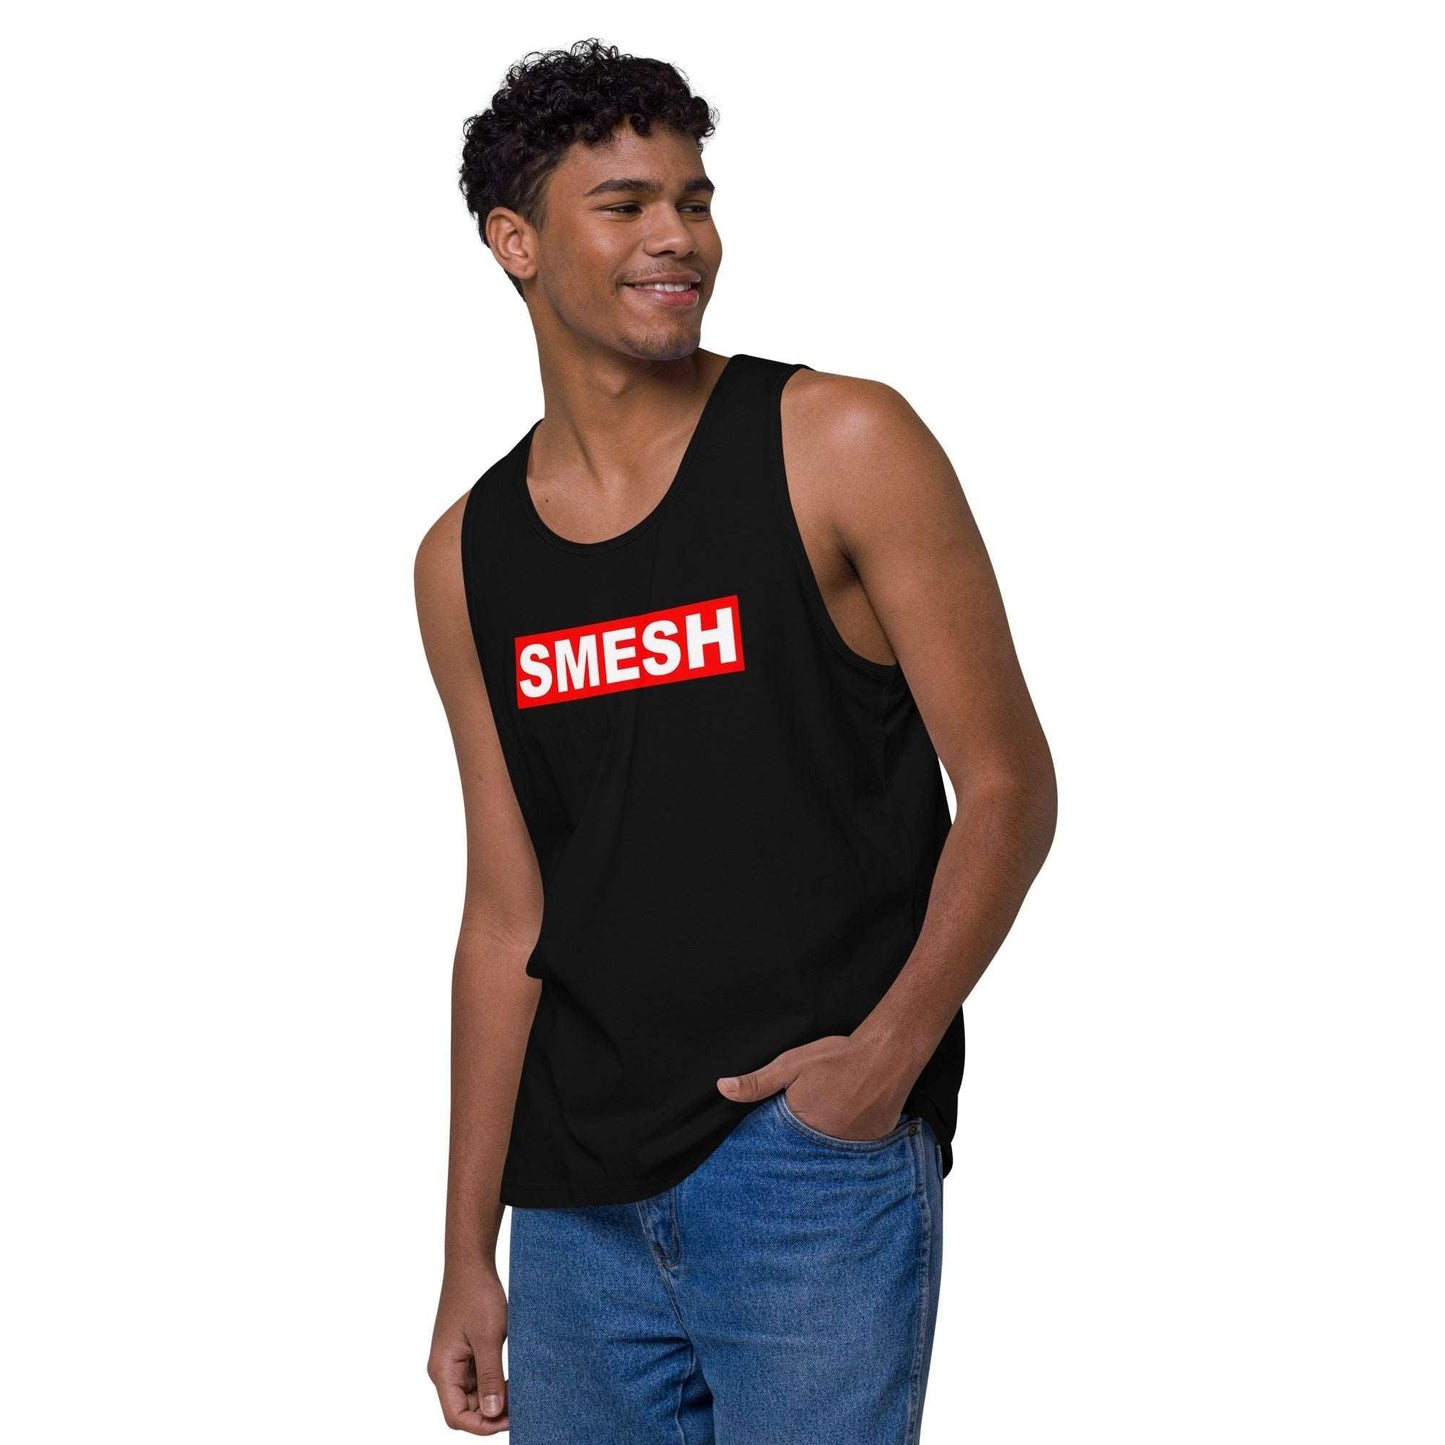 SMESH Men’s Premium Tank Top - Violent Art Shop